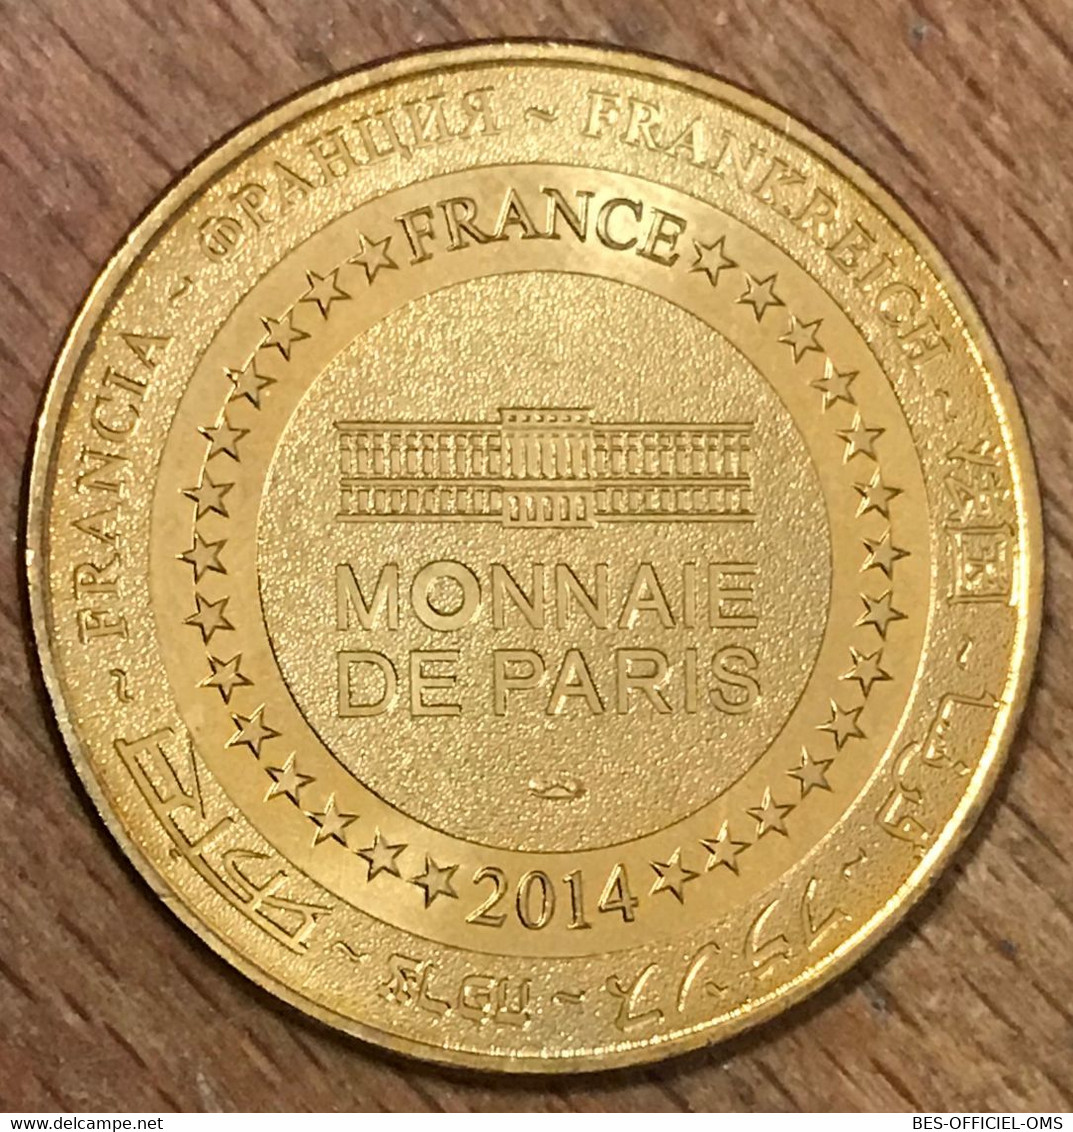 80 THIEPVAL SOMME FRANCE 1914 - 2018 MDP 2014 MÉDAILLE SOUVENIR MONNAIE DE PARIS JETON TOURISTIQUE MEDALS TOKENS COINS - 2014